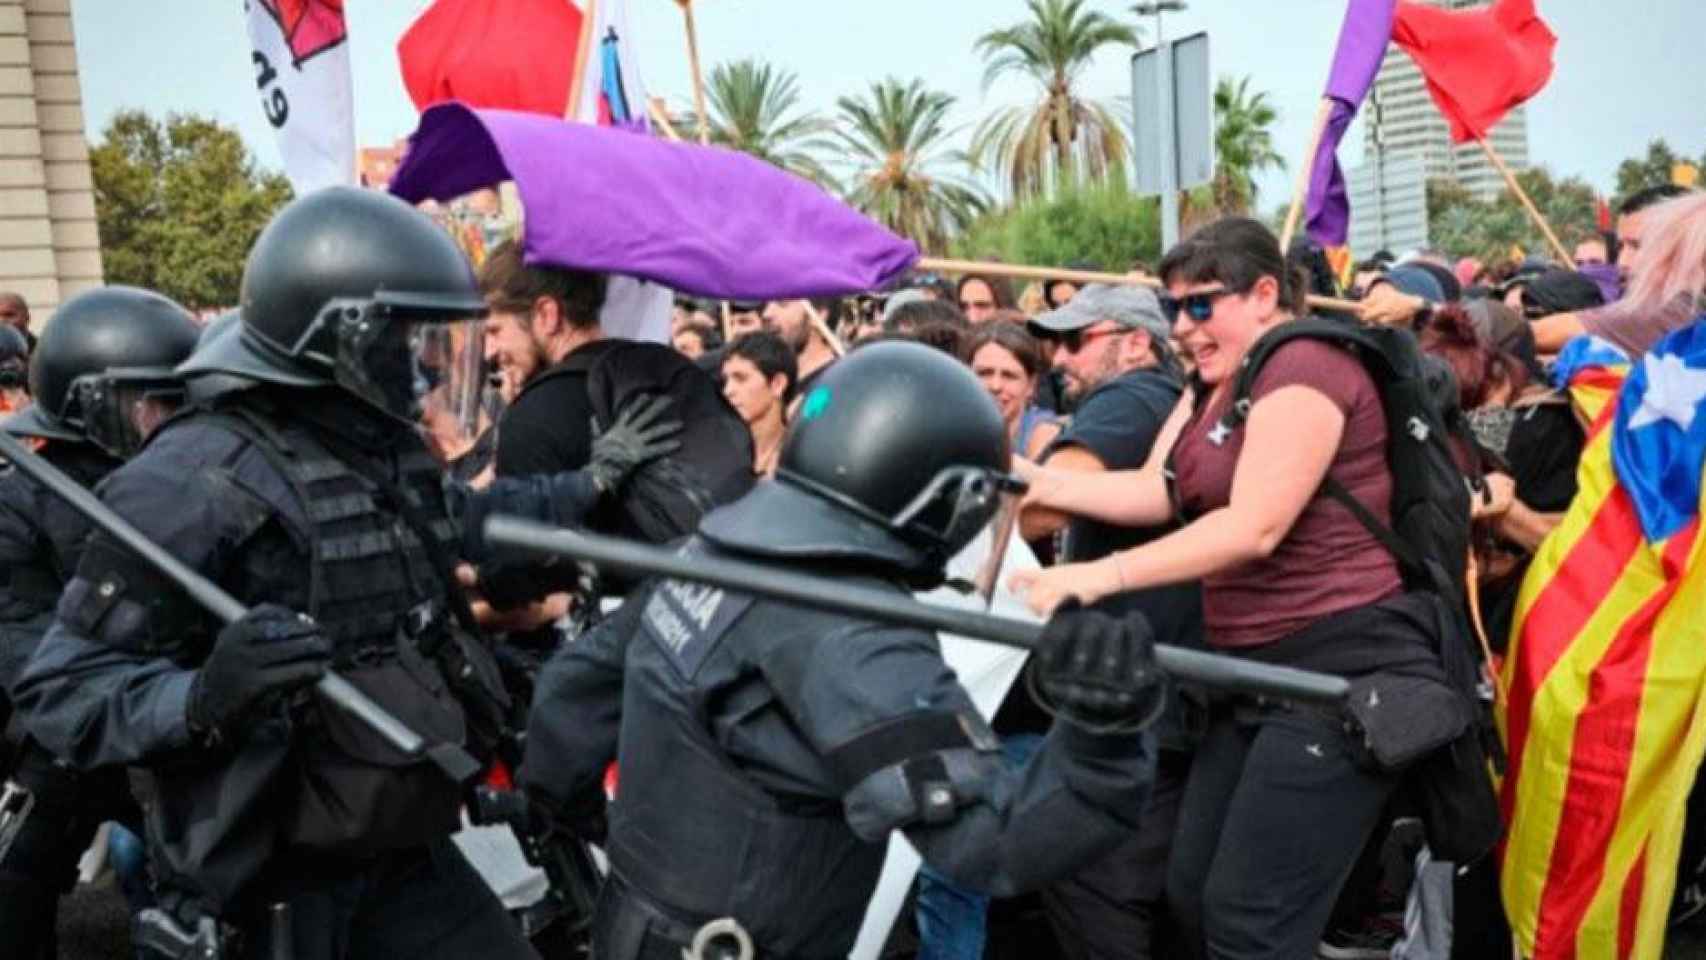 Los Mossos cargan contra los manifestantes en el puerto / CG